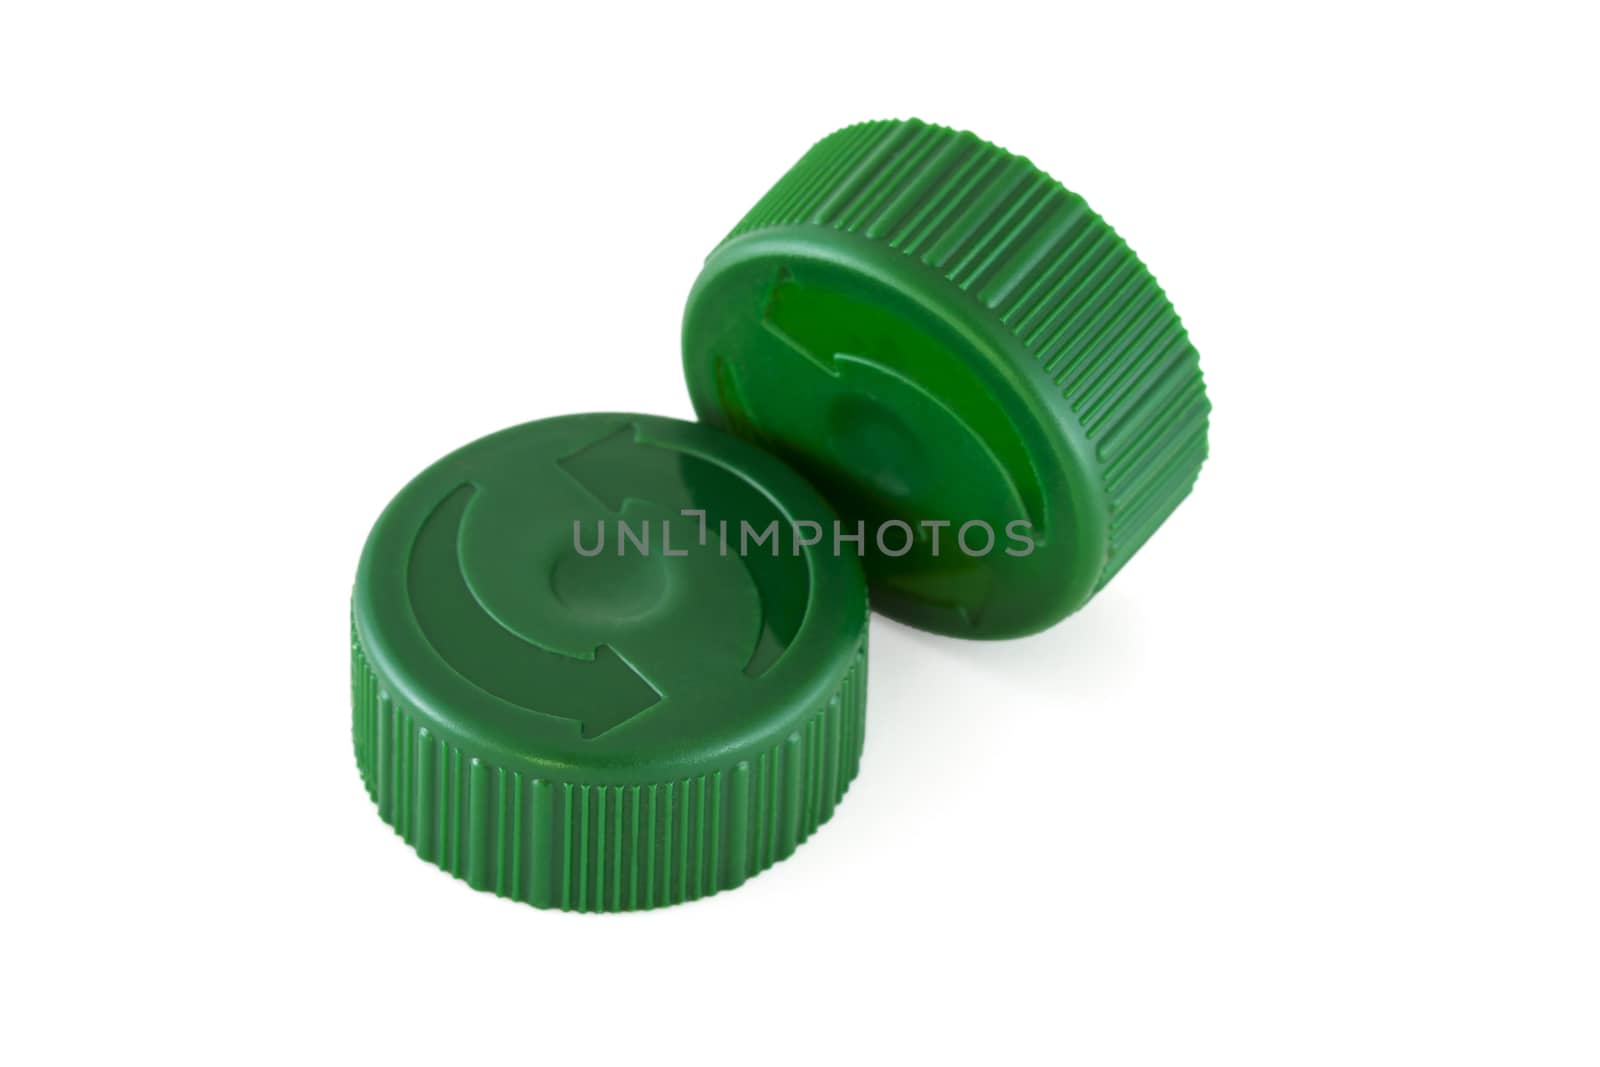 Two green plastic bottle caps by Gbuglok